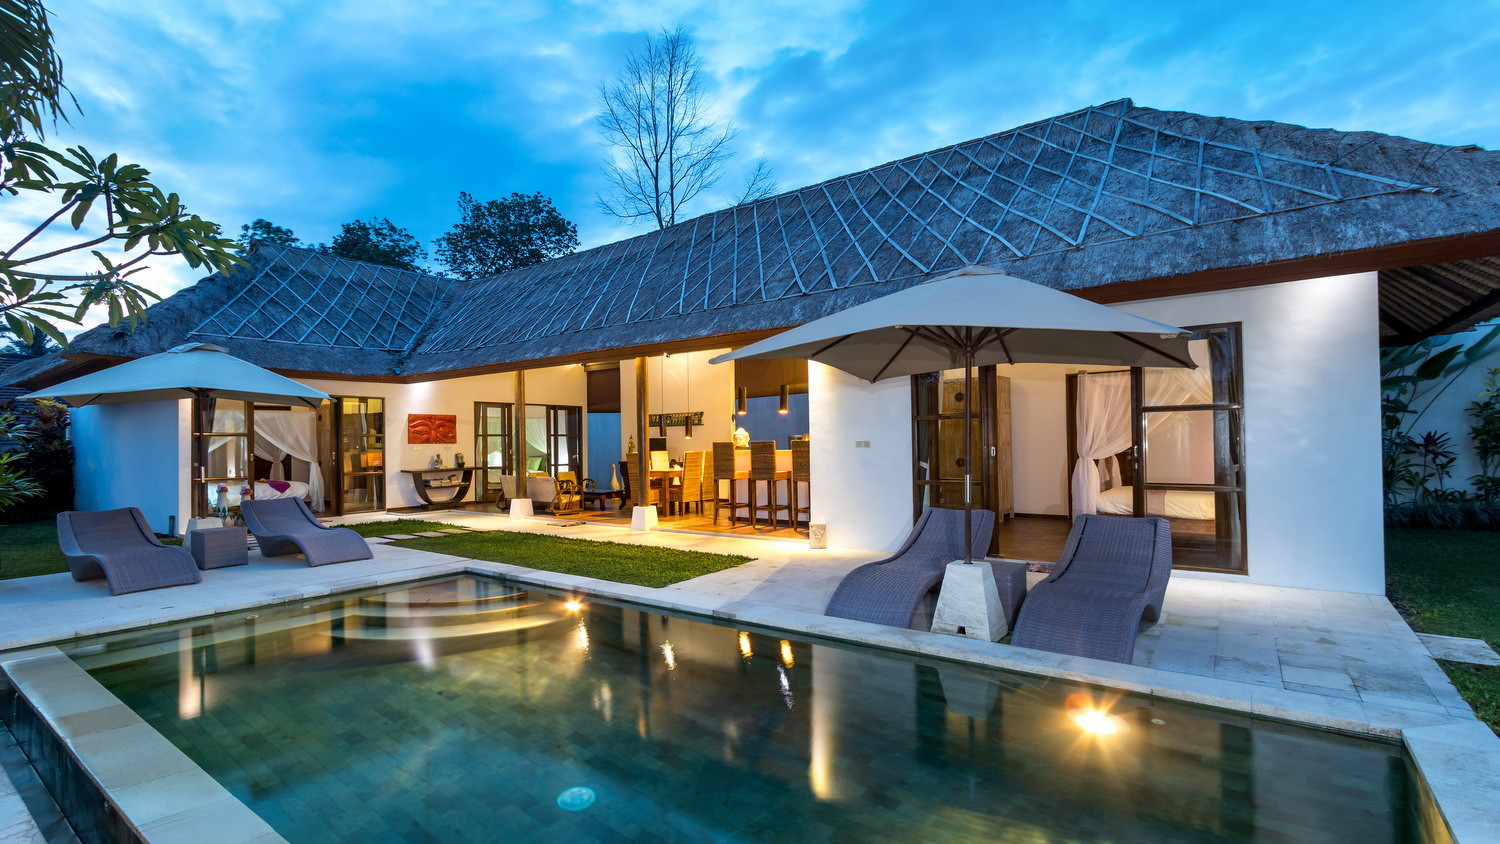 Sewa Villa Murah di Bali di Bawah 2 Juta per Malam